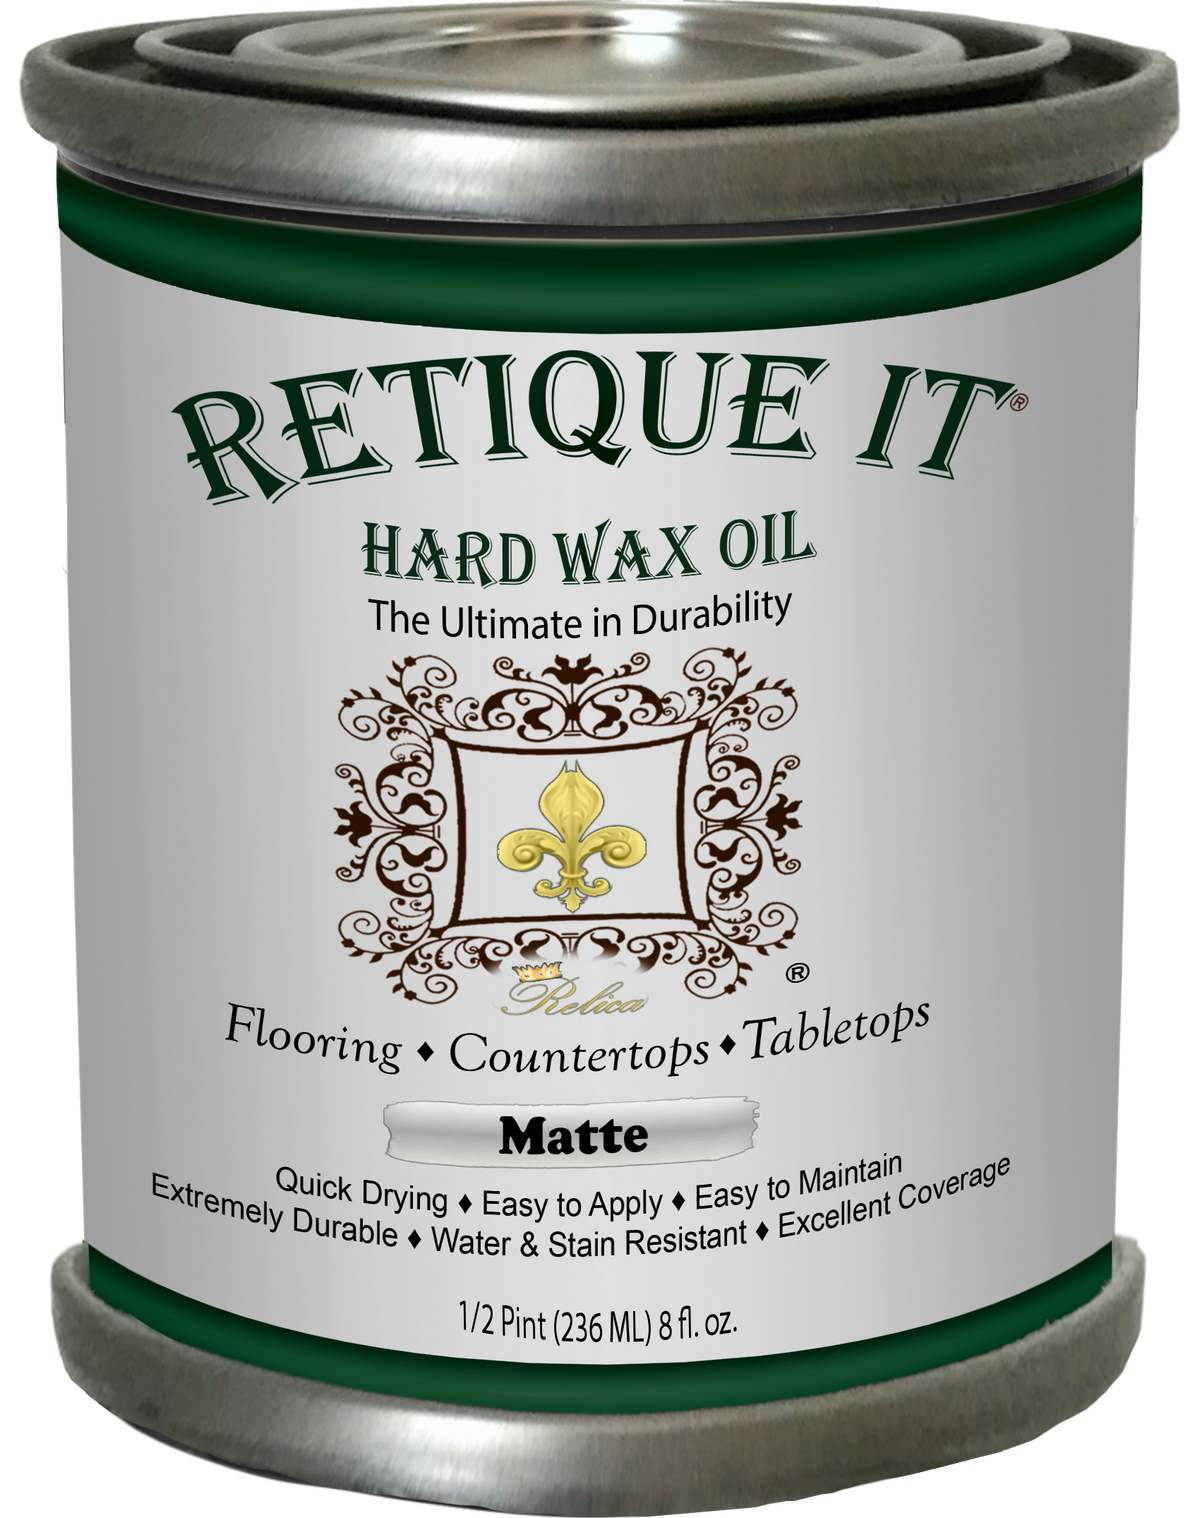 Retique It Hard Wax Oil